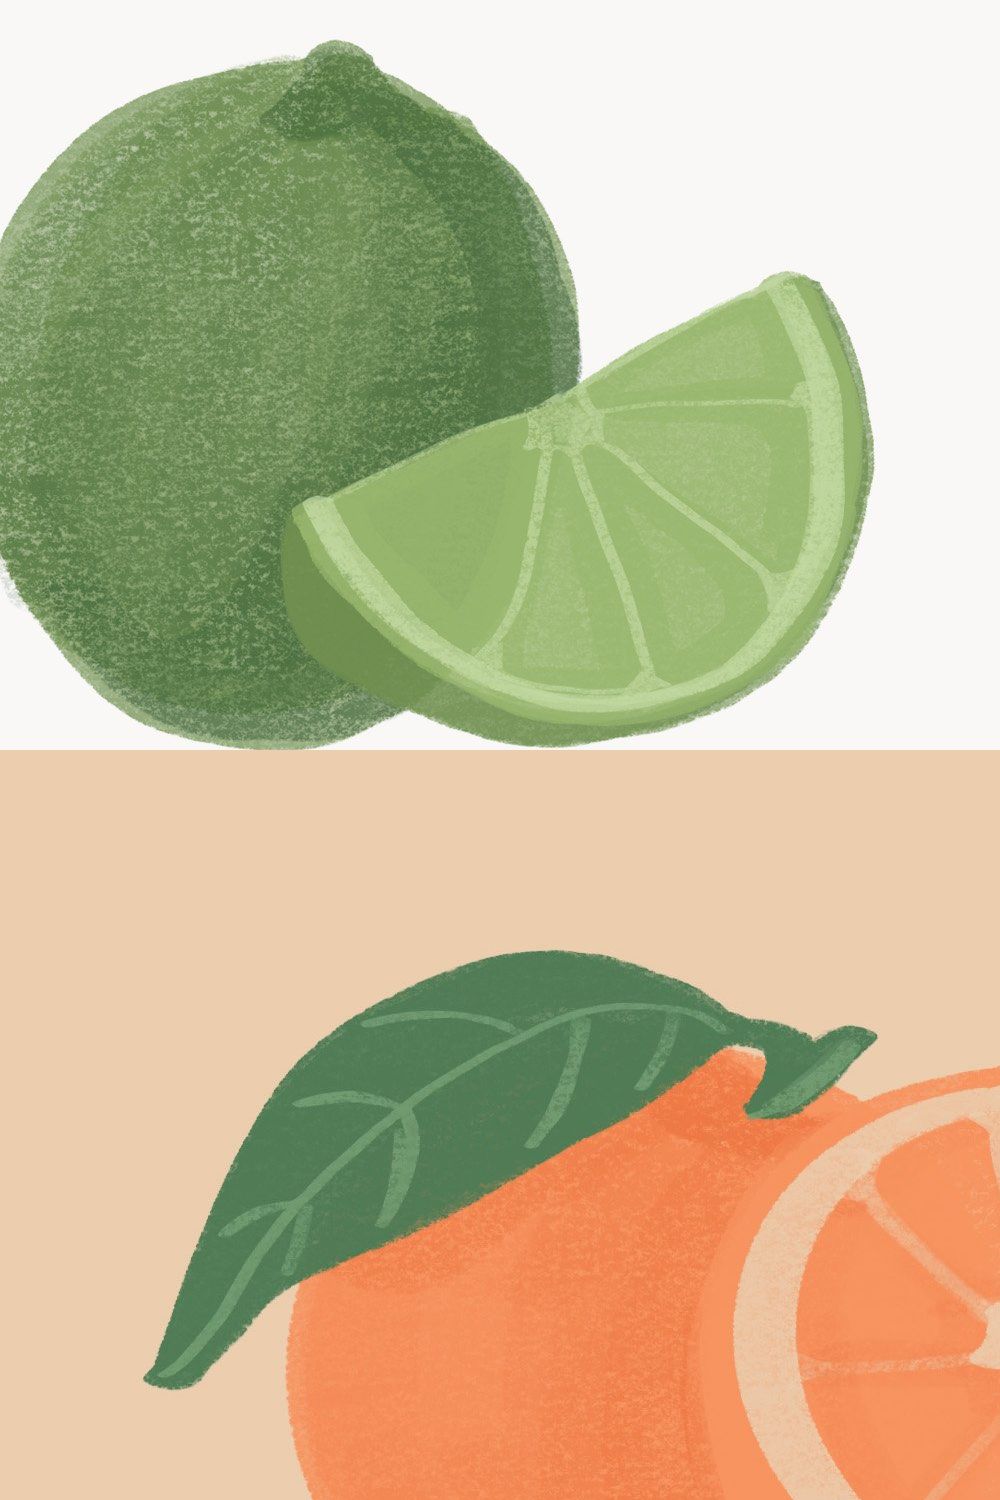 Citrus Fruit Clip Art, Orange, Lemon pinterest preview image.